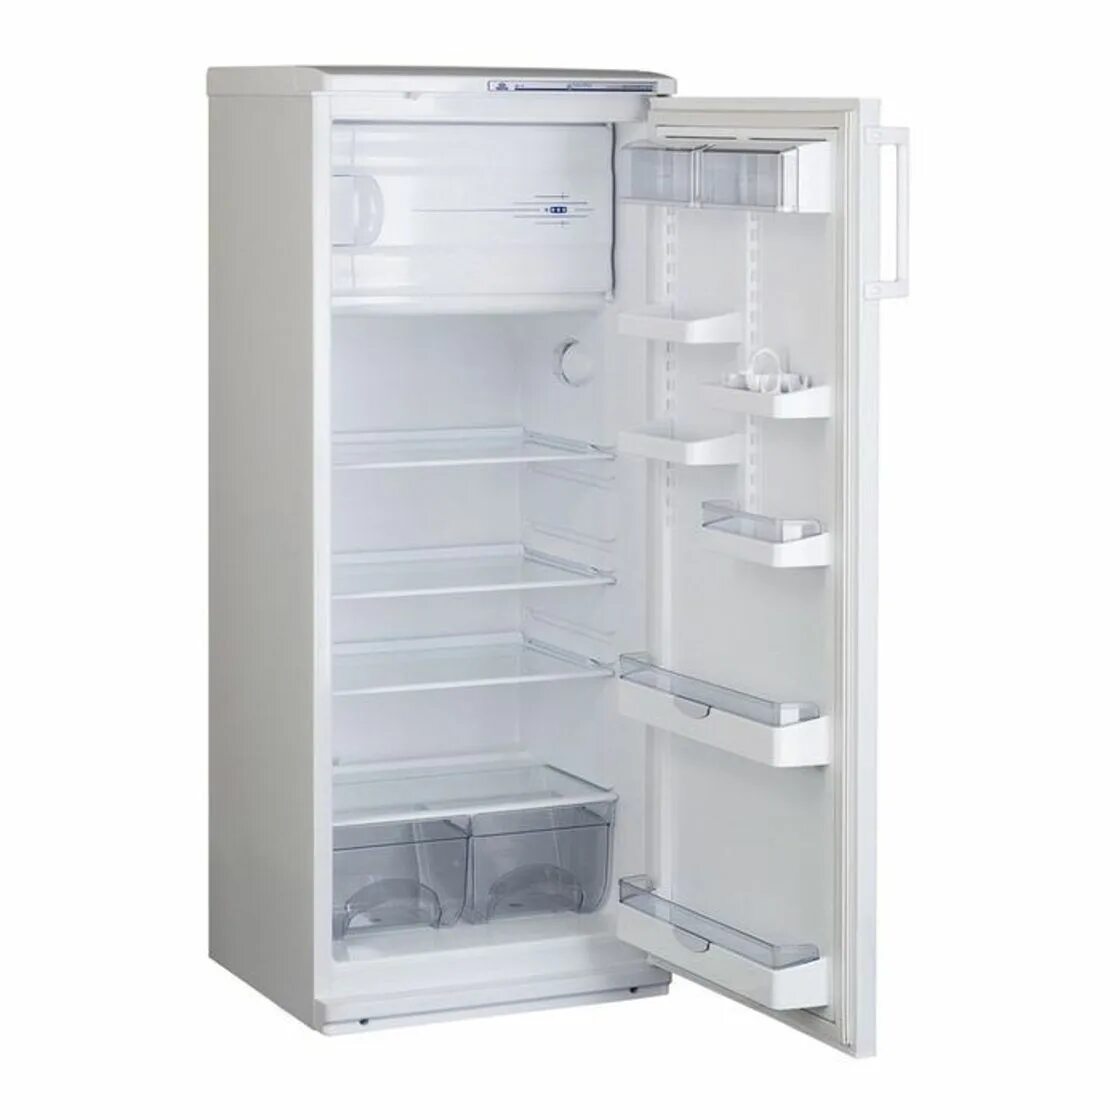 Купить холодильник в нижнем новгороде недорого. Холодильник Атлант 2823-80. Холодильник MX 2823-80 ATLANT. Атлант МХ-2822-80 220л. Белый. Холодильник ATLANT 2822-80.